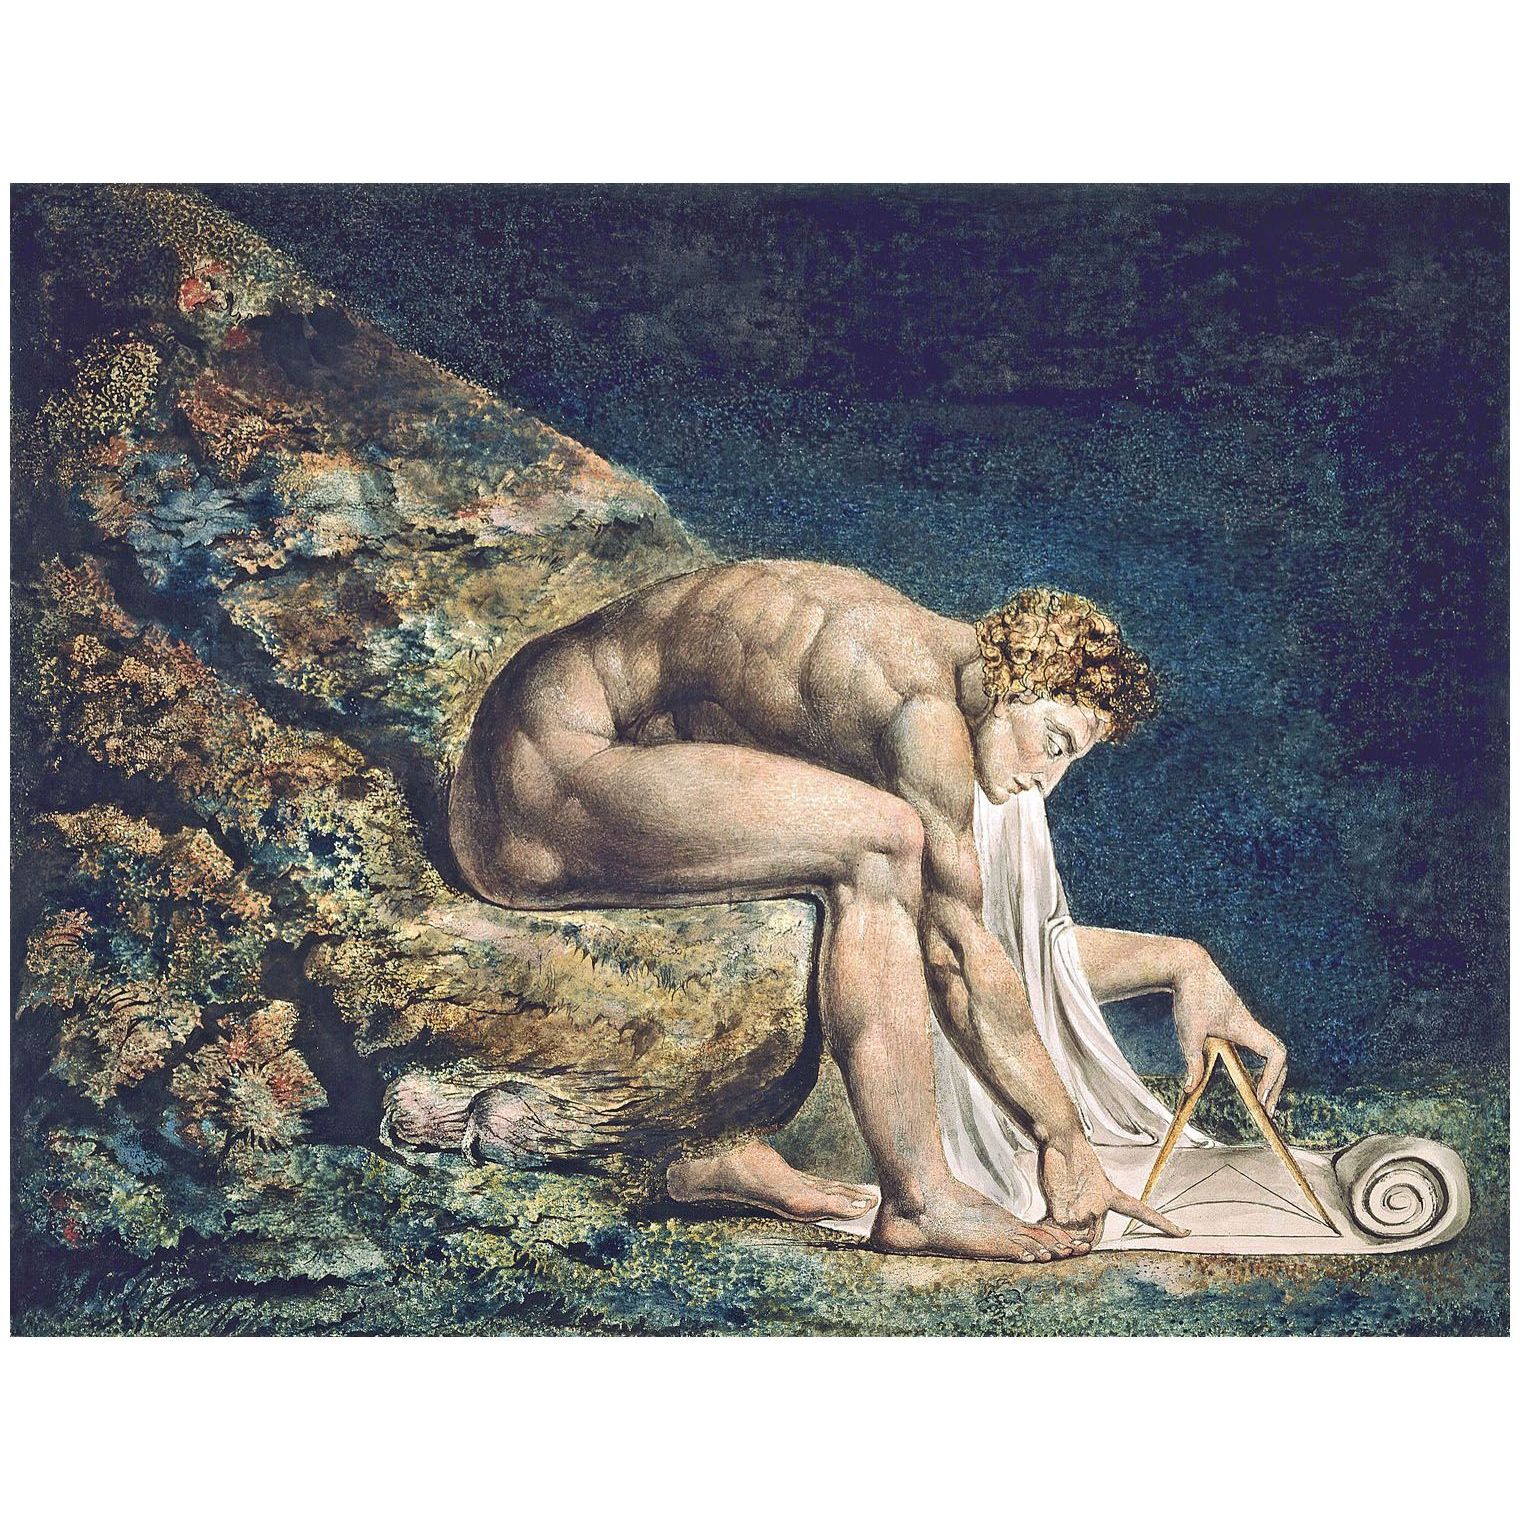 William Blake. Isaac Newton. 1804. Tate Britain